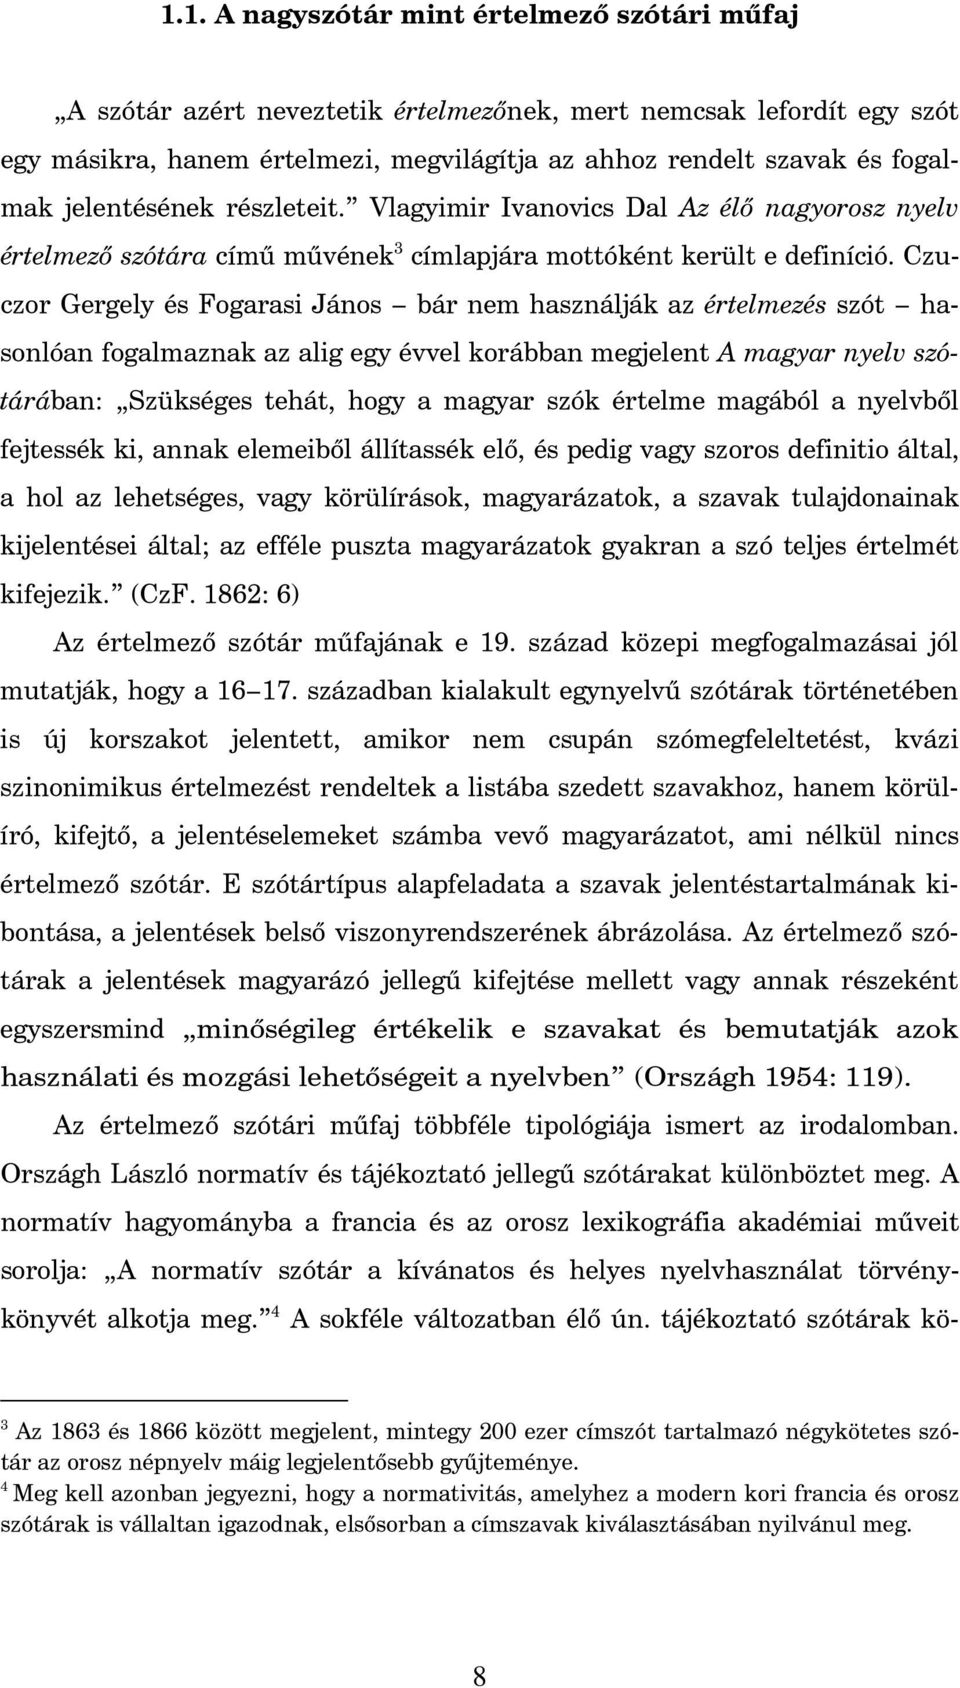 Czuczor Gergely és Fogarasi János bár nem használják az értelmezés szót hasonlóan fogalmaznak az alig egy évvel korábban megjelent A magyar nyelv szótárában: Szükséges tehát, hogy a magyar szók